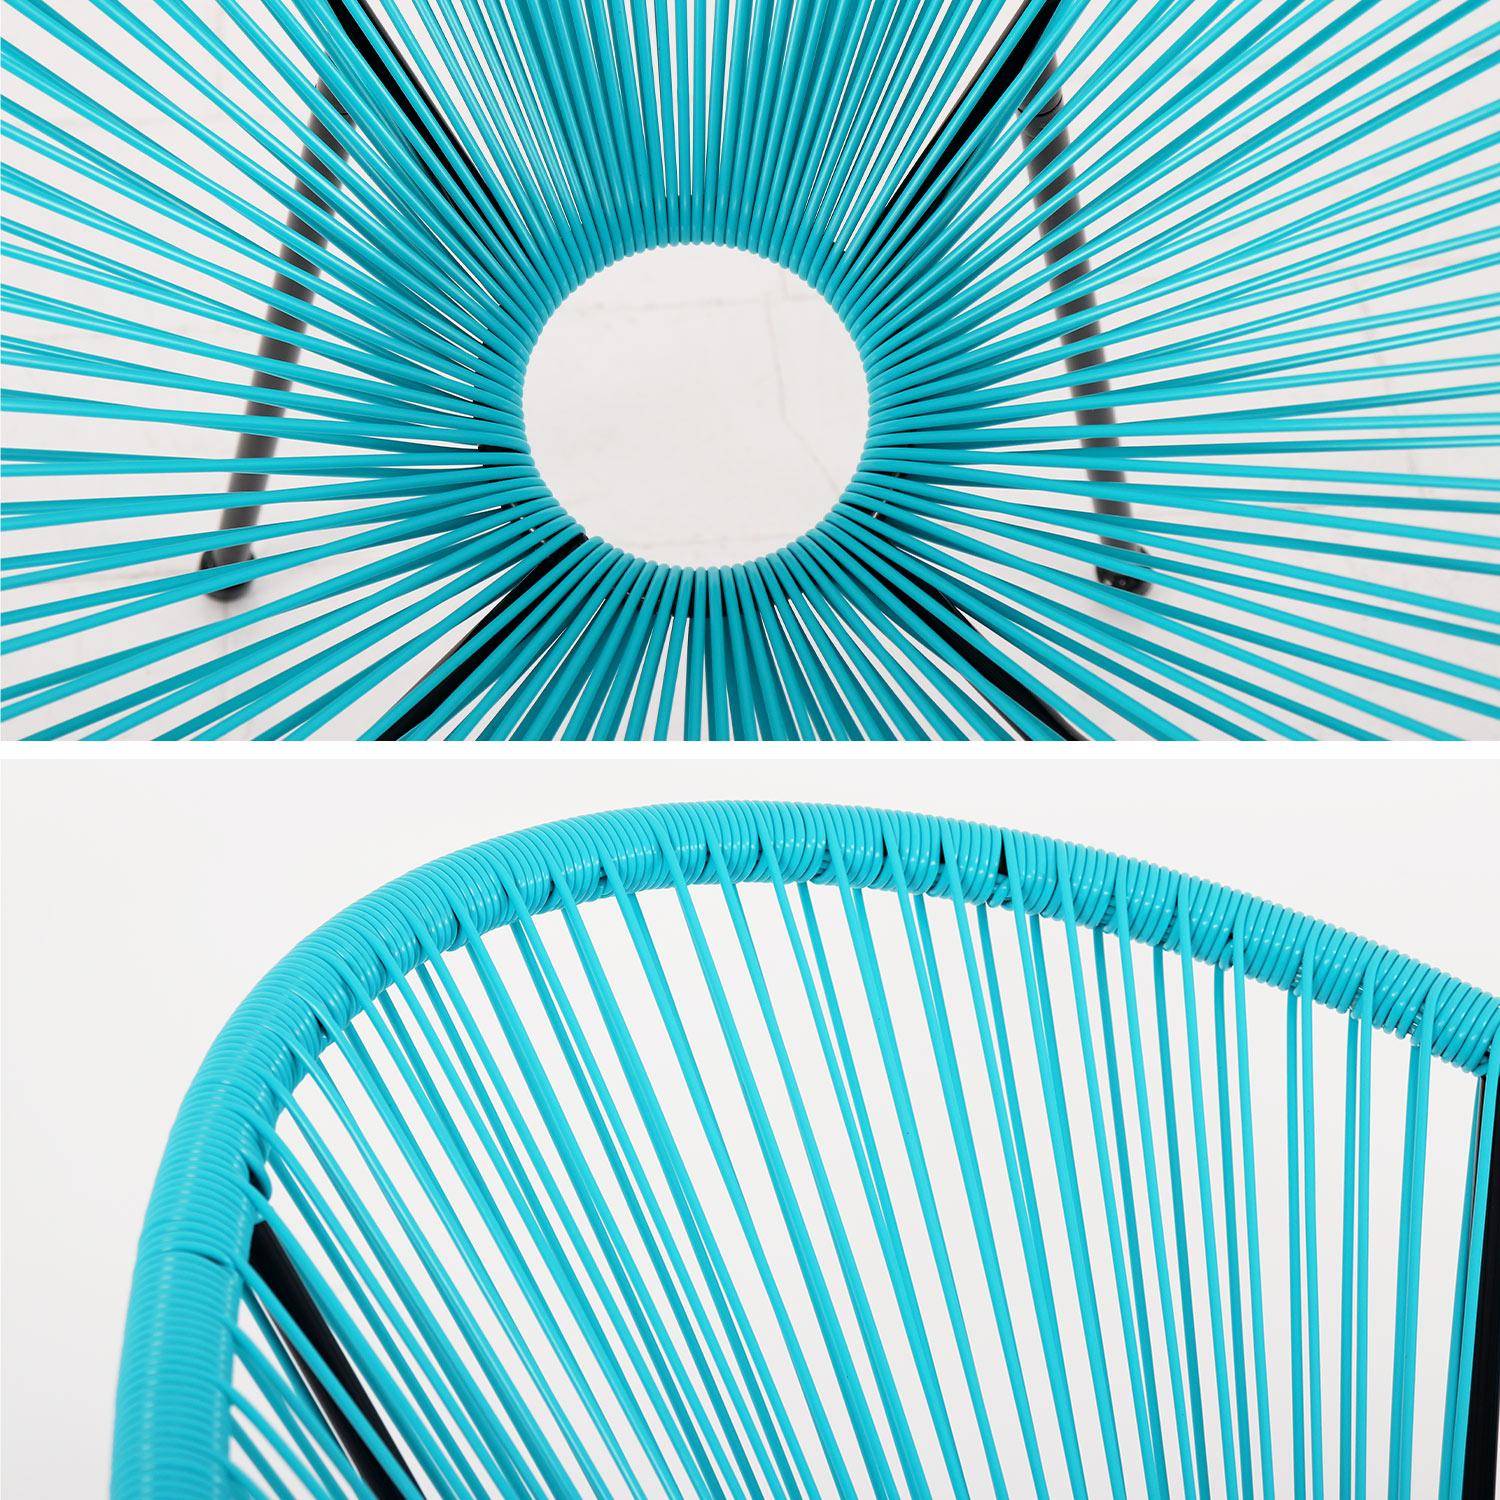 Fauteuil ACAPULCO forme d'oeuf - Turquoise - Fauteuil 4 pieds design rétro, cordage plastique, intérieur / extérieur Photo4